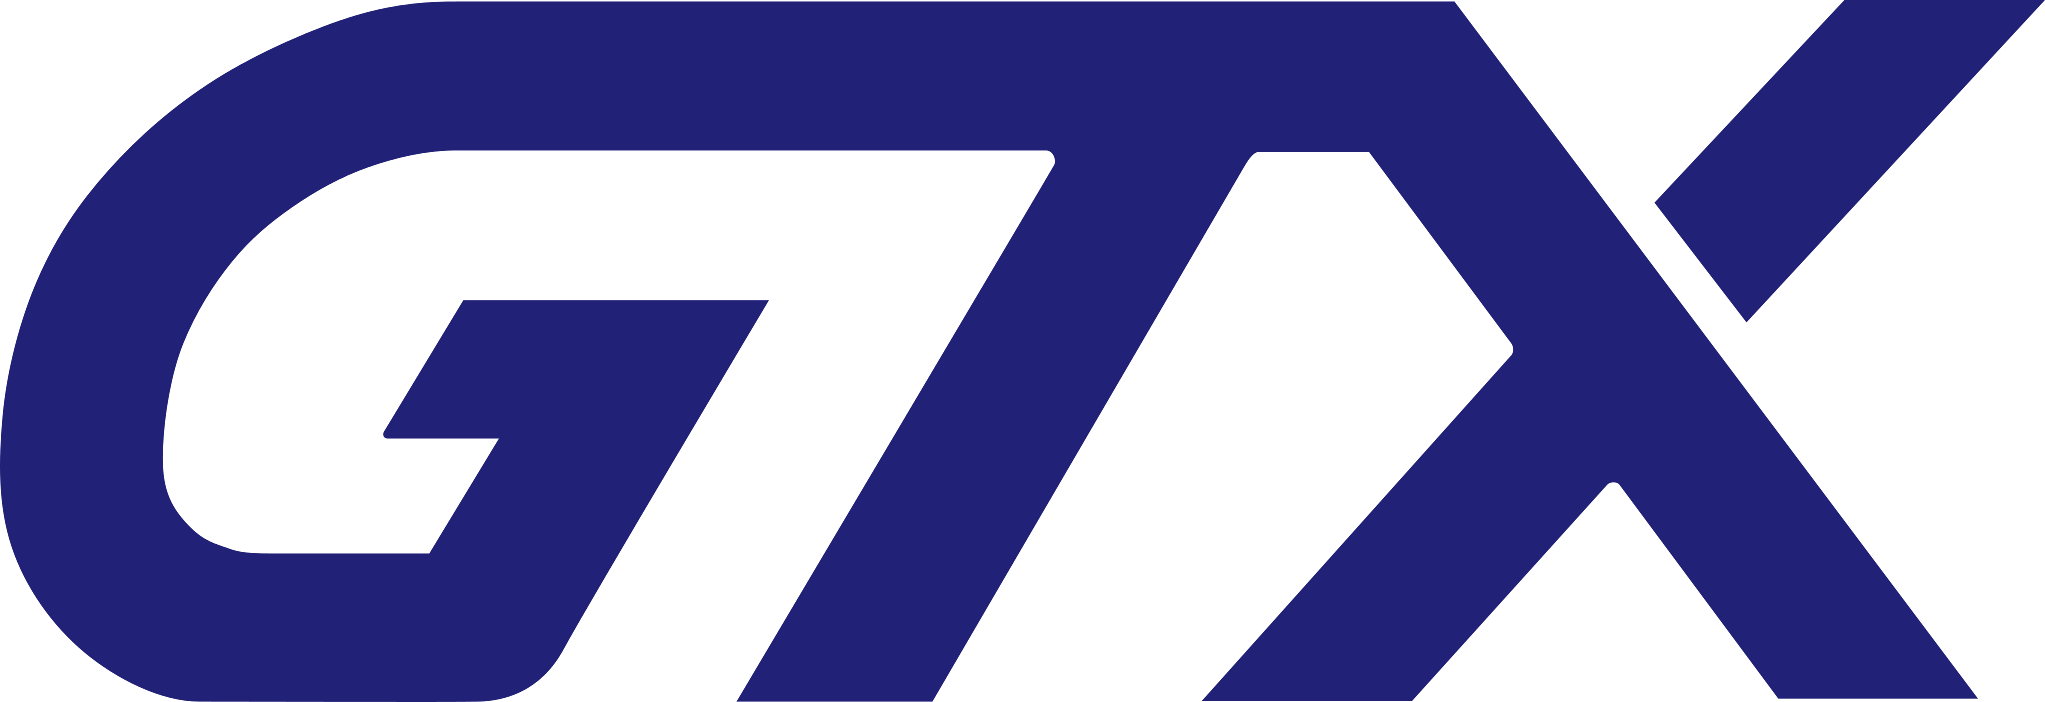 파일:GTX logo.png